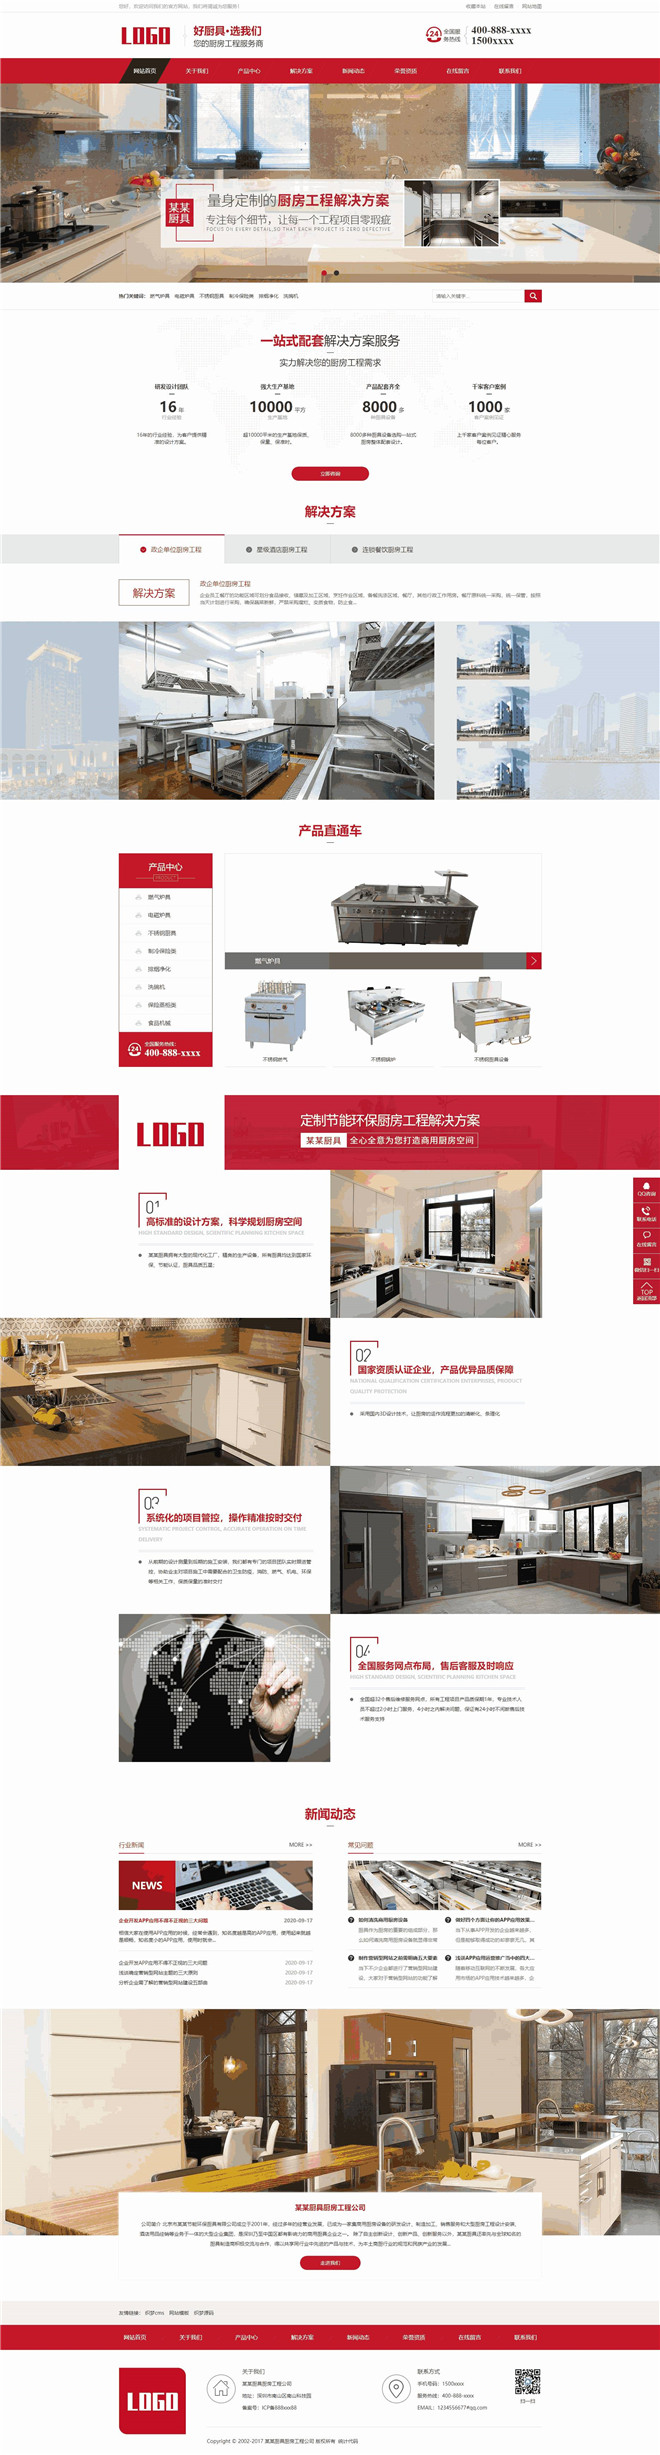 营销型厨房厨具安装工程生产销售公司网站WordPress模板主题演示图